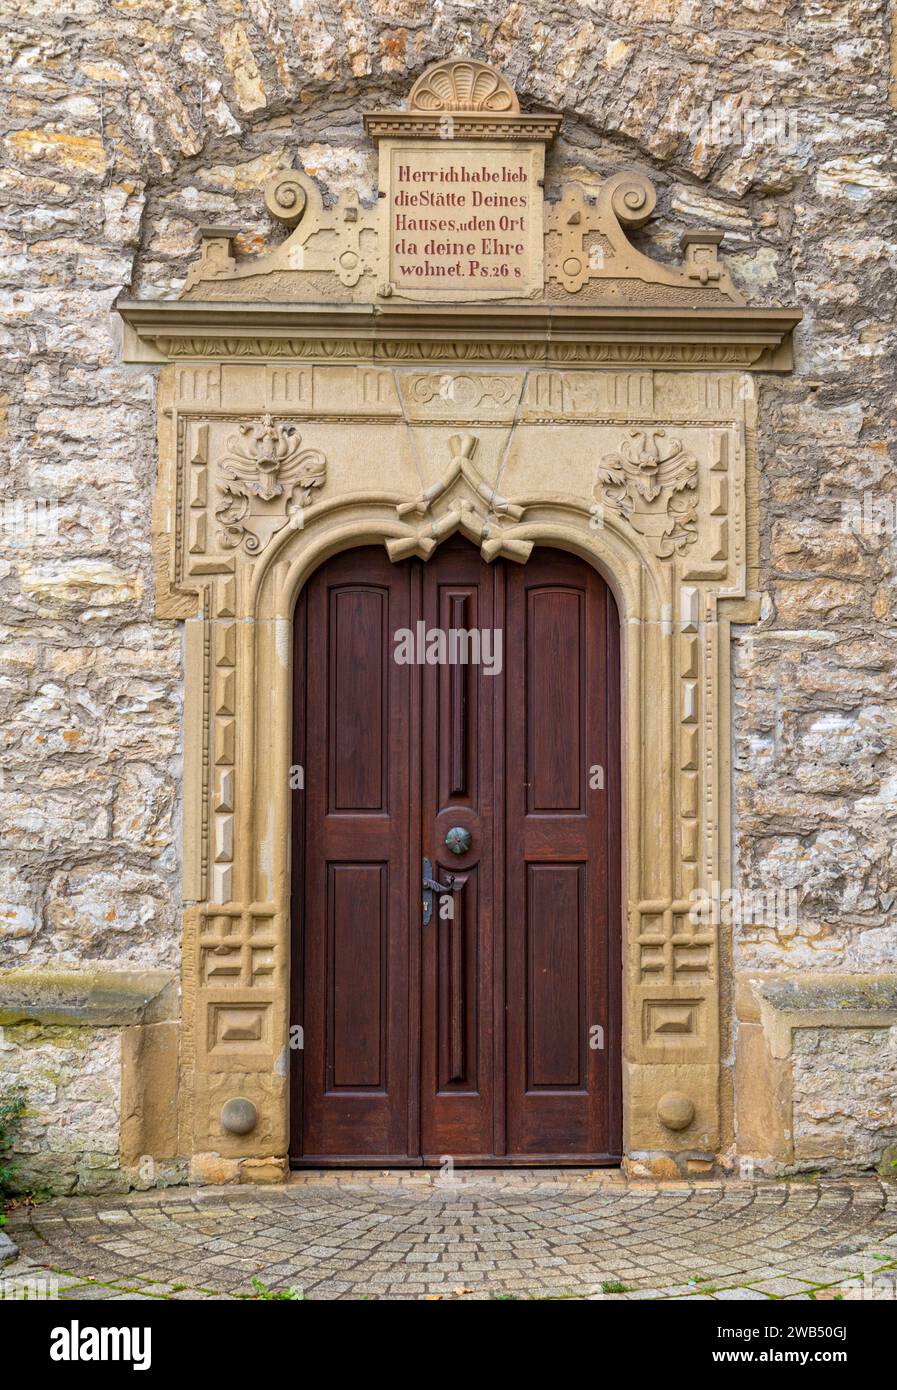 Cadre en pierre avec des éléments décoratifs et inscription biblique en langue allemande sur la porte d'entrée à sebastianskirche à Kochendorf, Bad Friedrich Banque D'Images